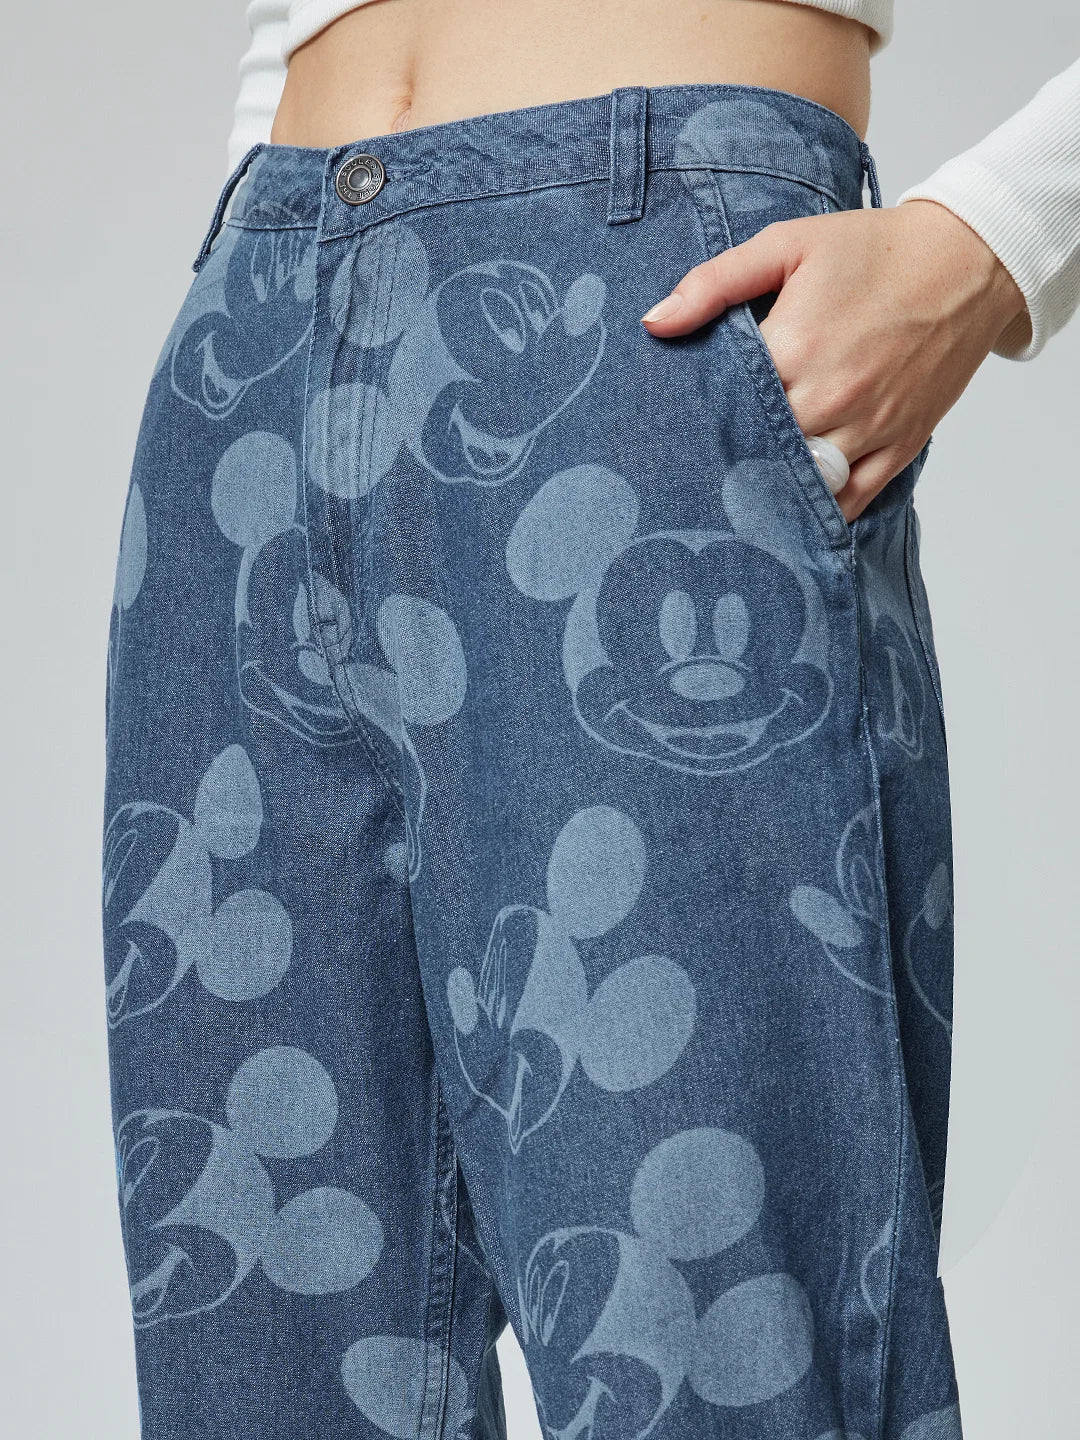 Mickey Mouse Pattern (Zipped) (UK version)